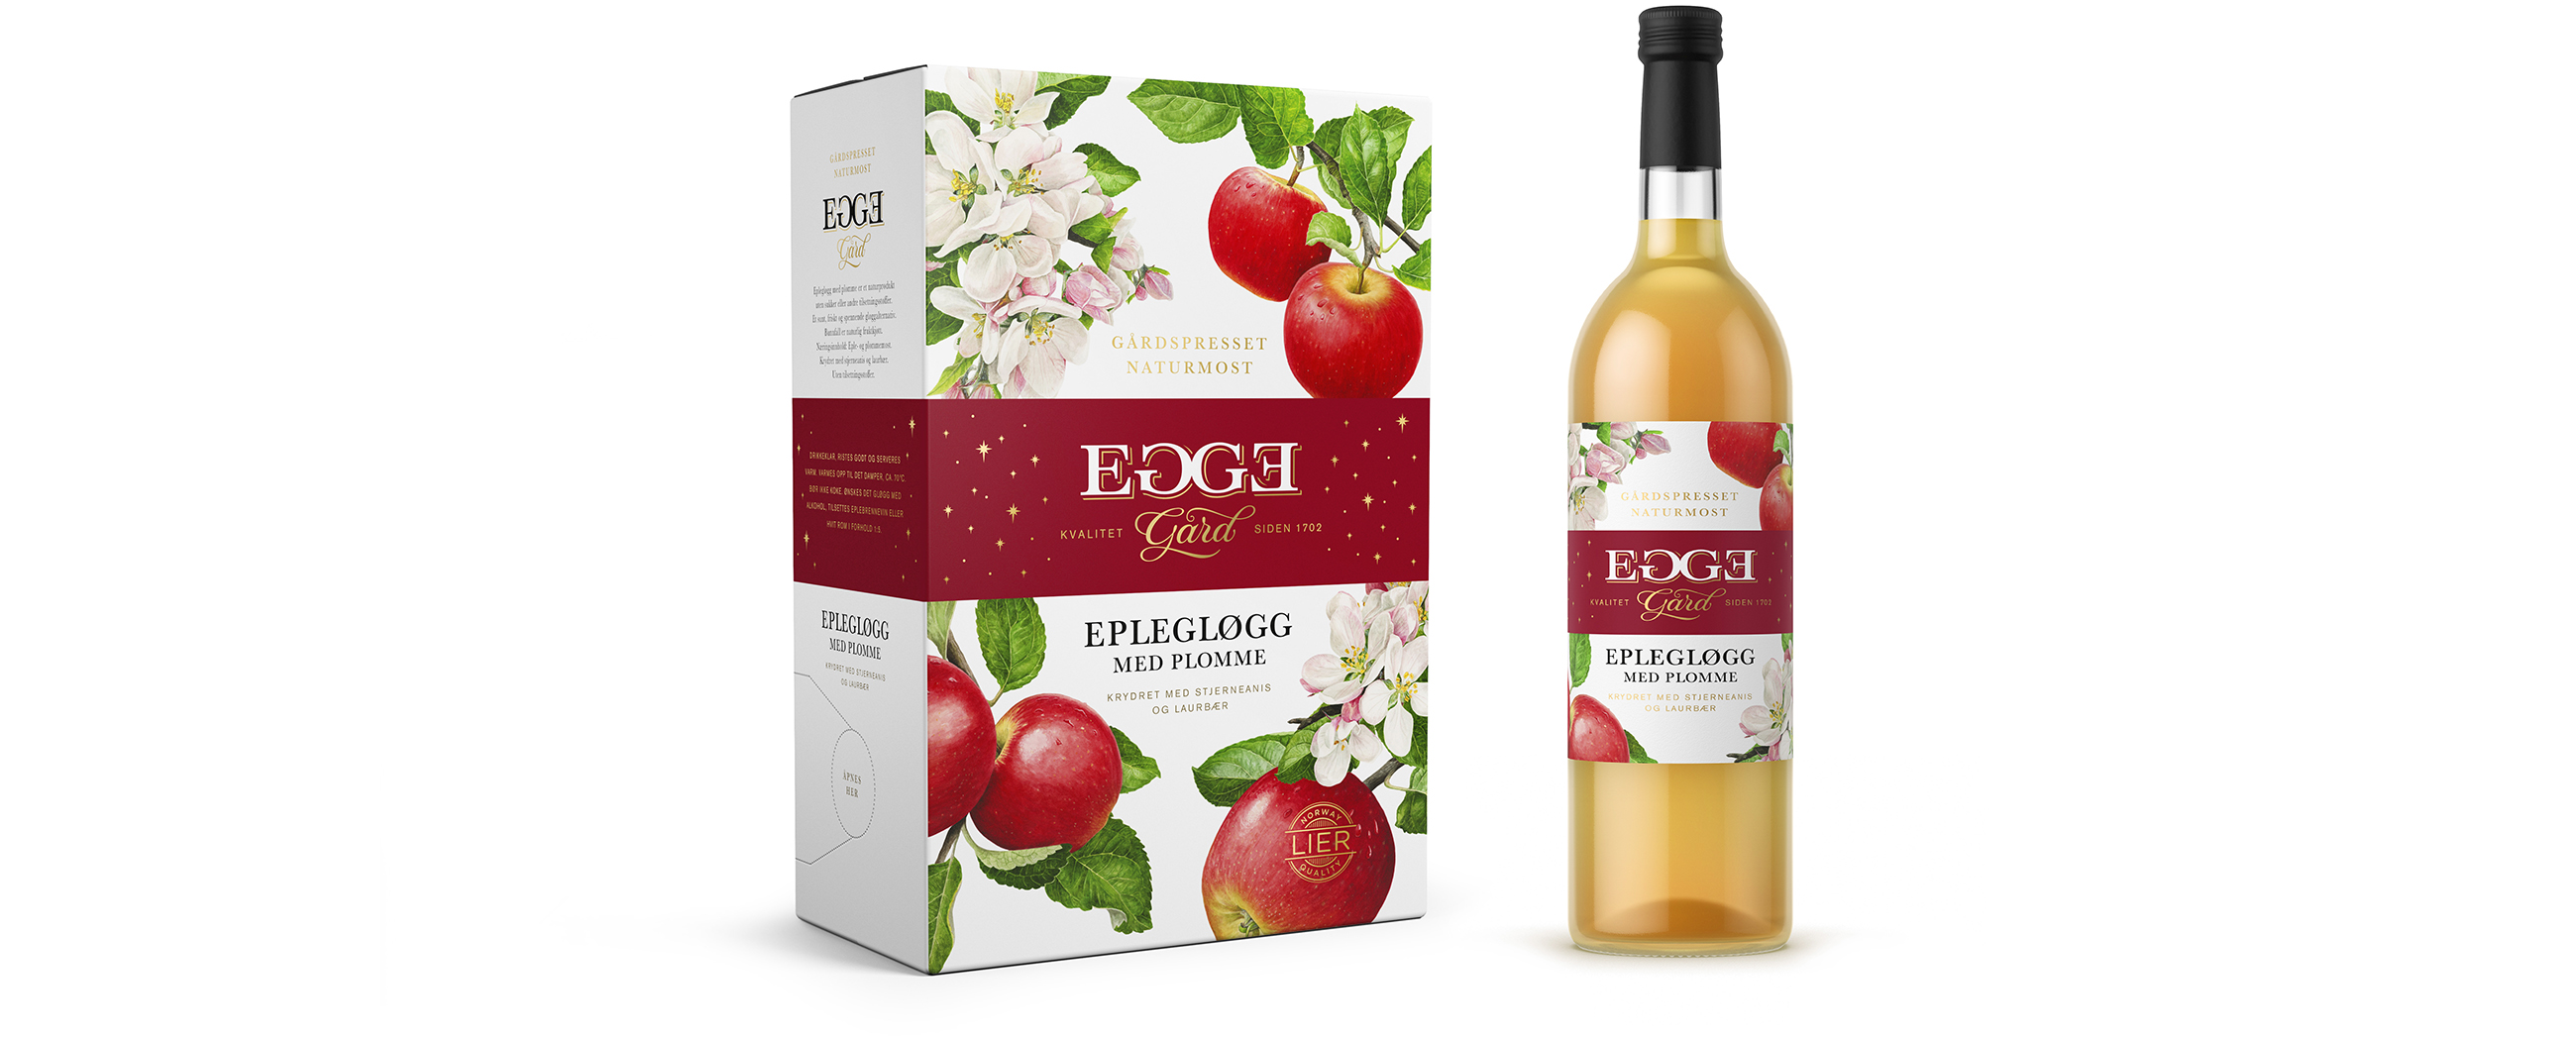 Egge Gård eplegløgg med plomme, apple mulled wine with plum. Emballasje packaging design.